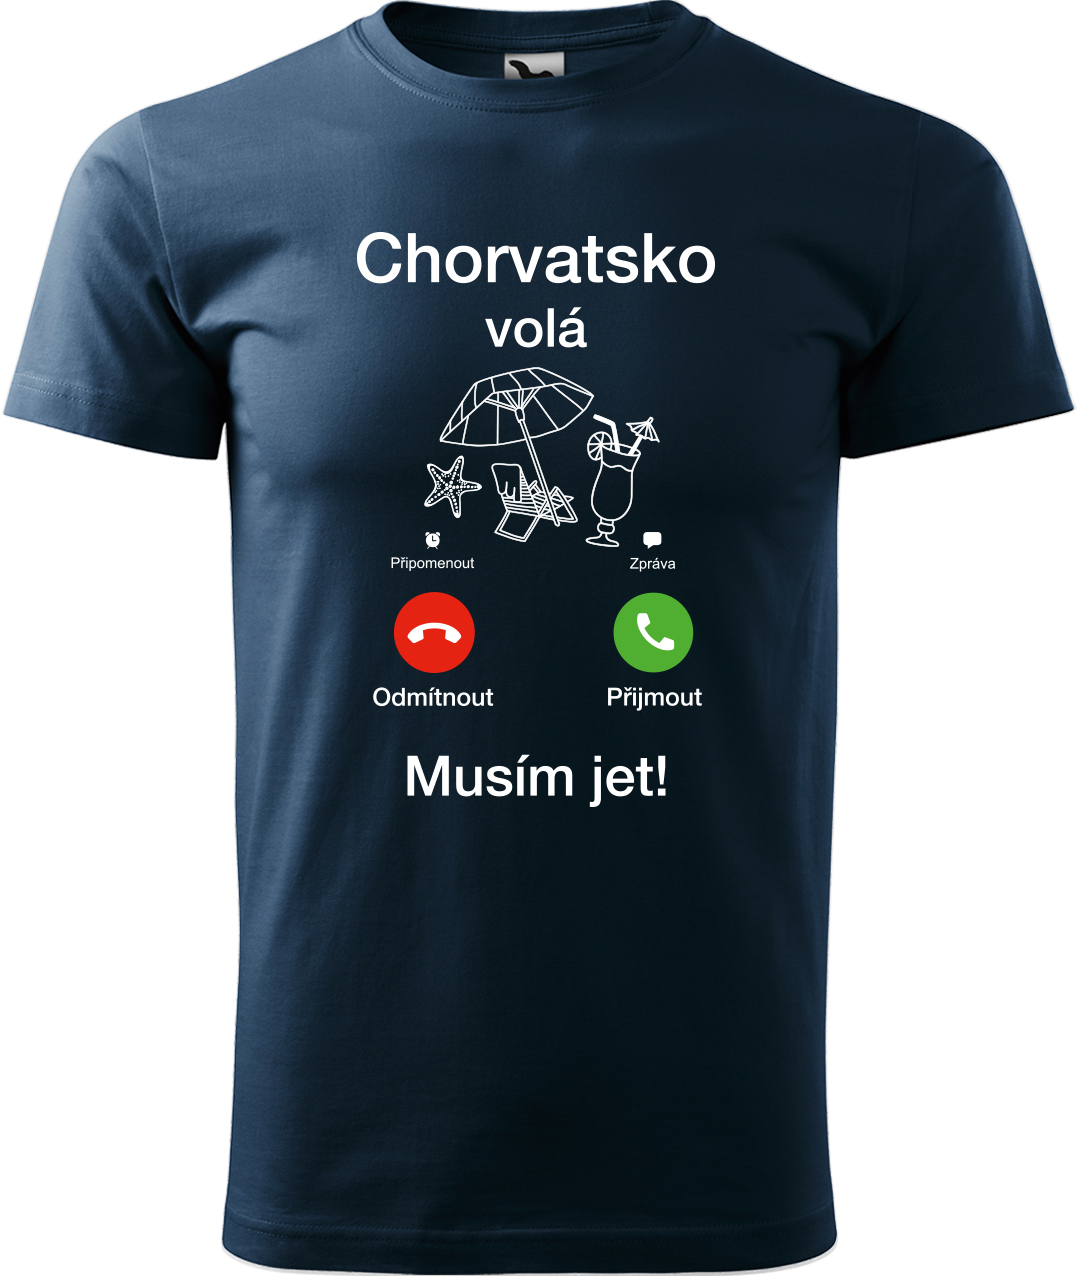 Pánské cestovatelské tričko - Chorvatsko volá - musím jet! Velikost: L, Barva: Námořní modrá (02), Střih: pánský